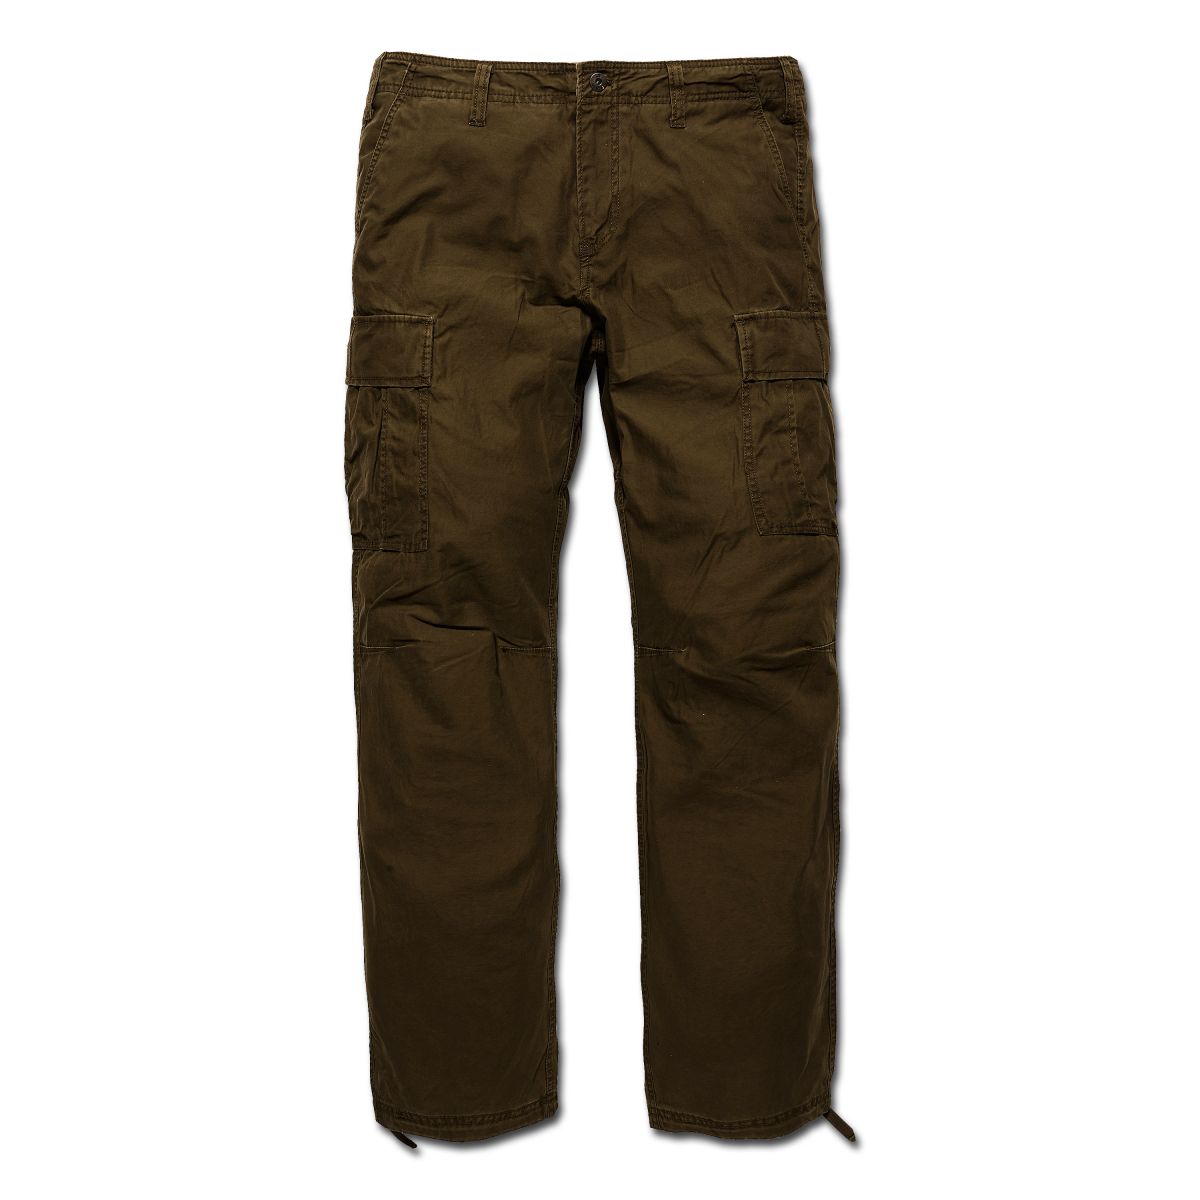 Pants Vintage Industries BDU Reydon dark olive | Pants Vintage ...